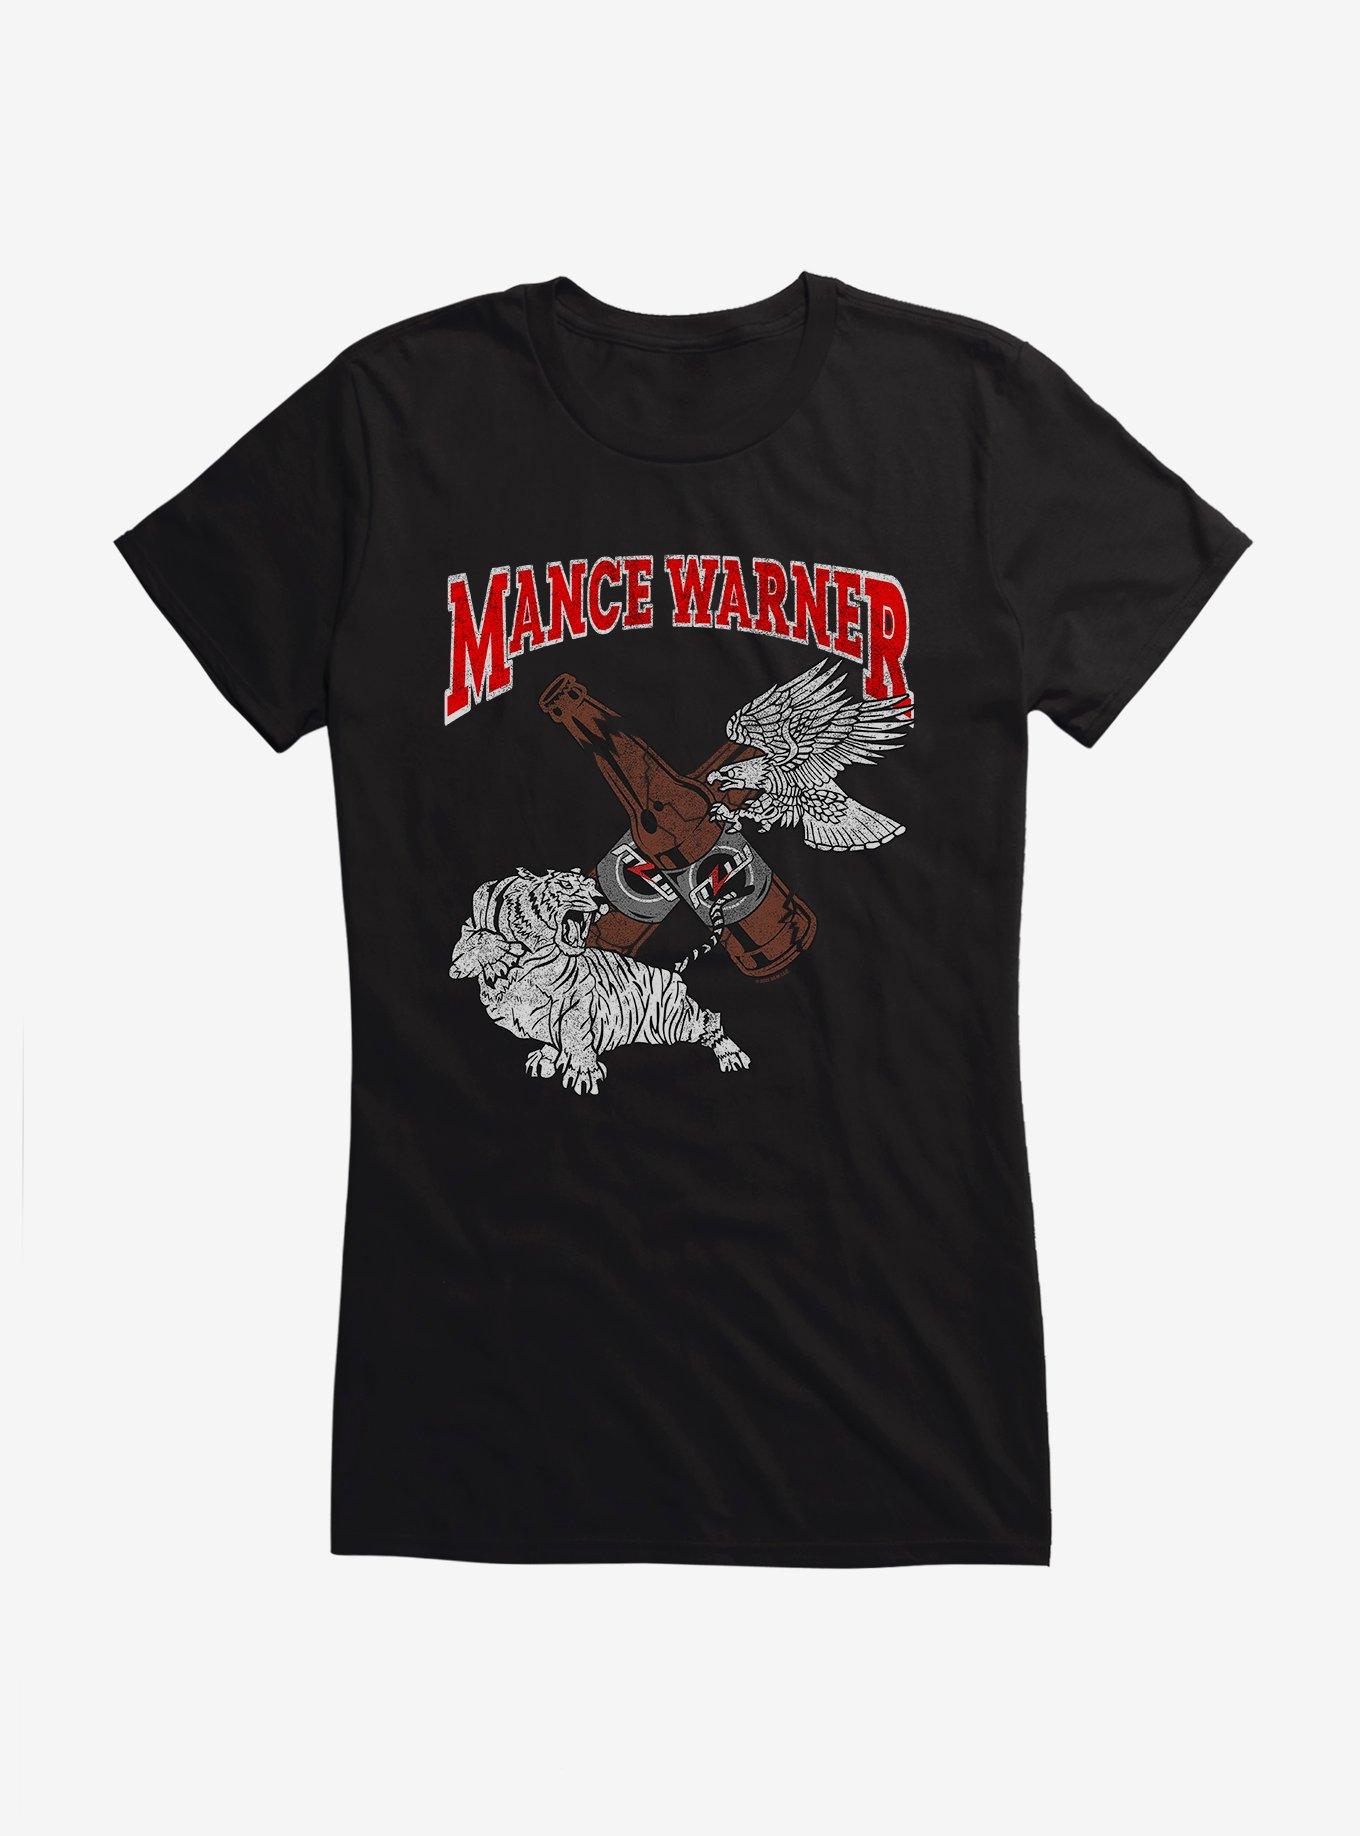 Major League Wrestling Mance Warner Broken Bottles Girls T-Shirt, BLACK, hi-res